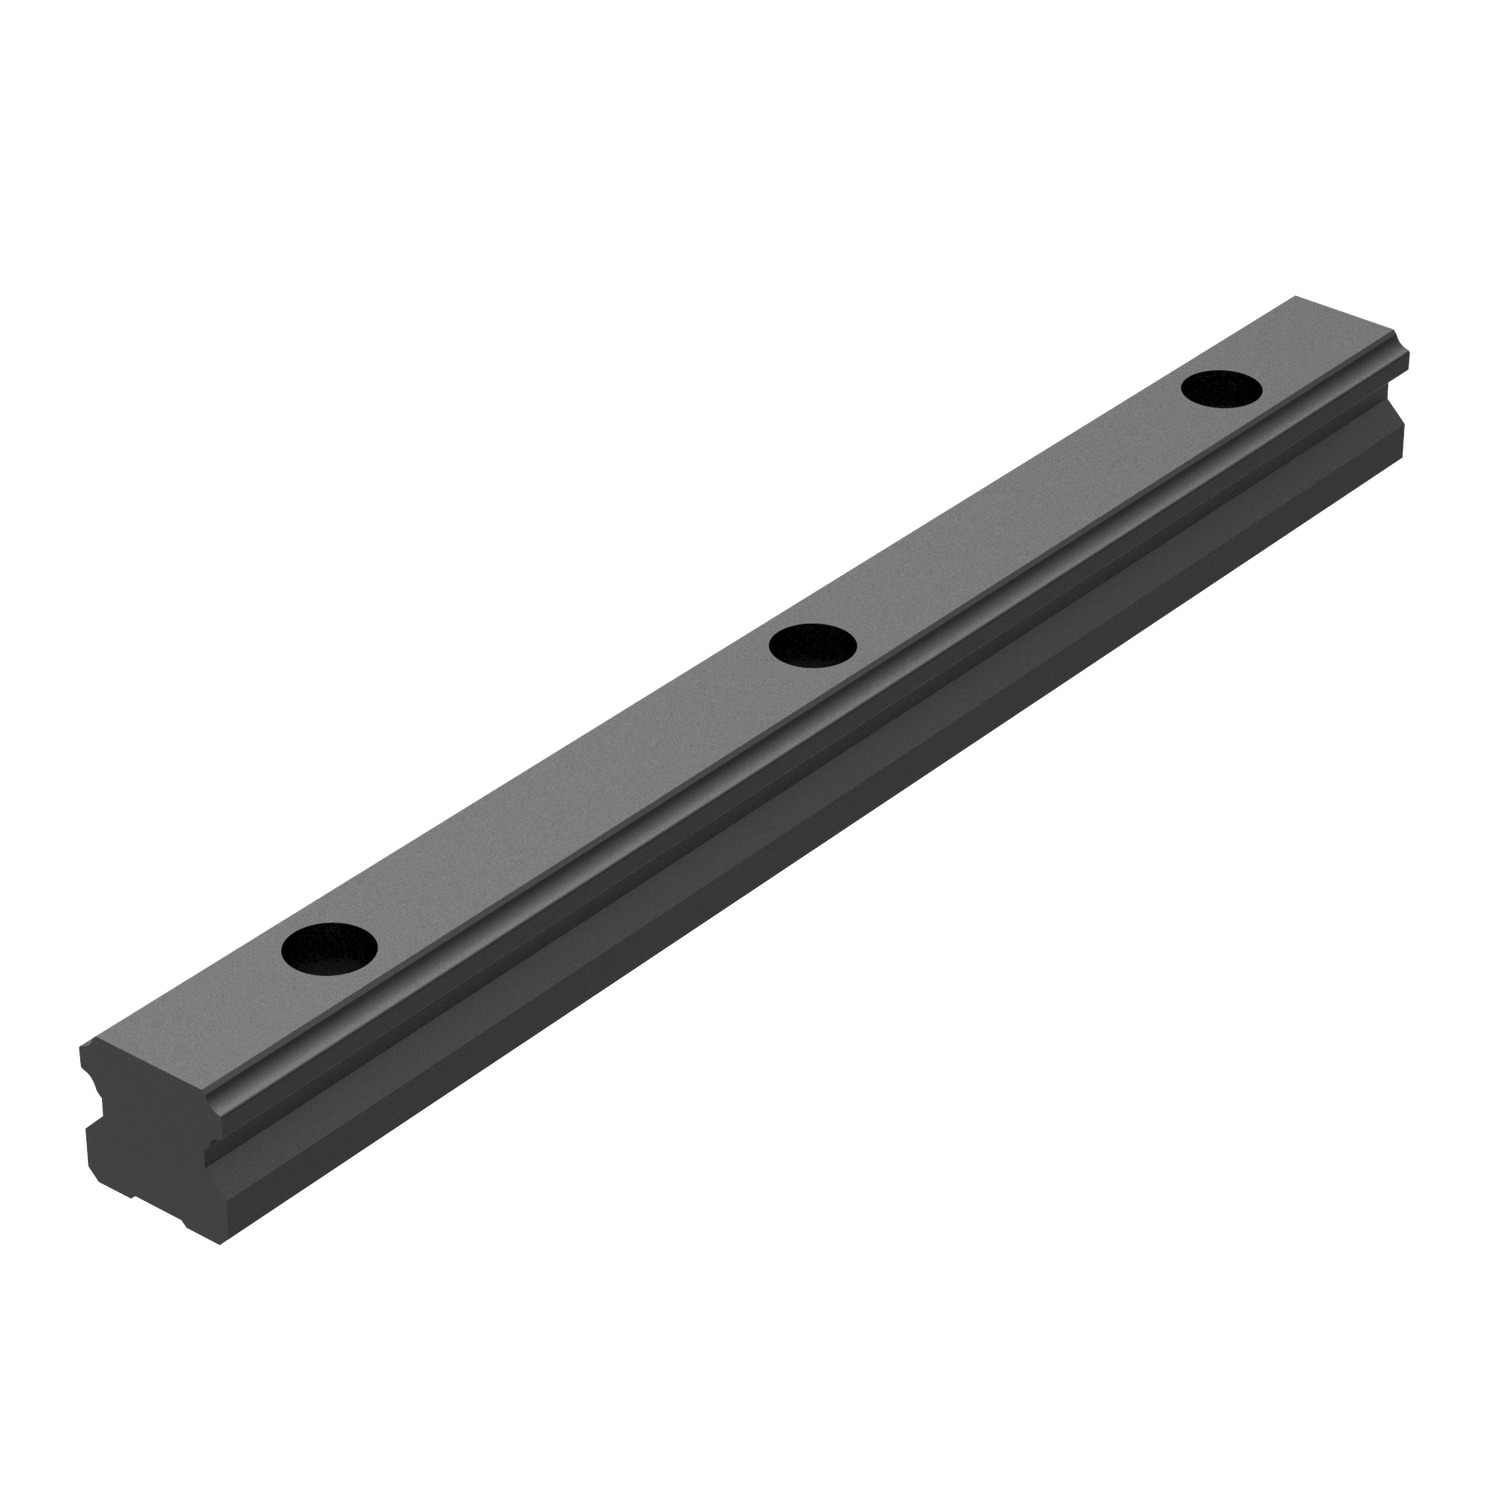 L1016.BL - 20mm Linear Guide Rail